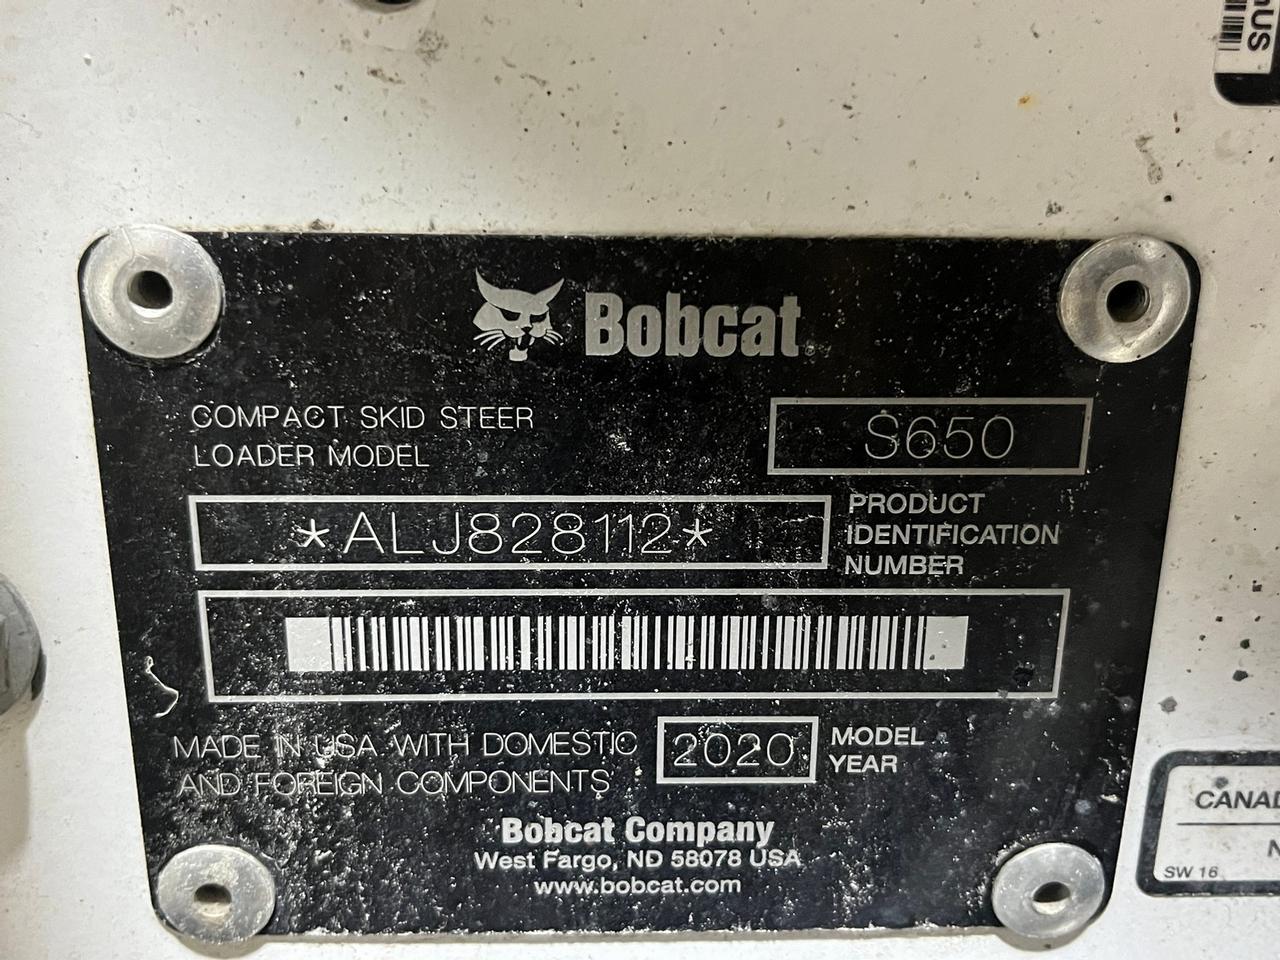 2020 Bobcat S650 Skid Steer Loader